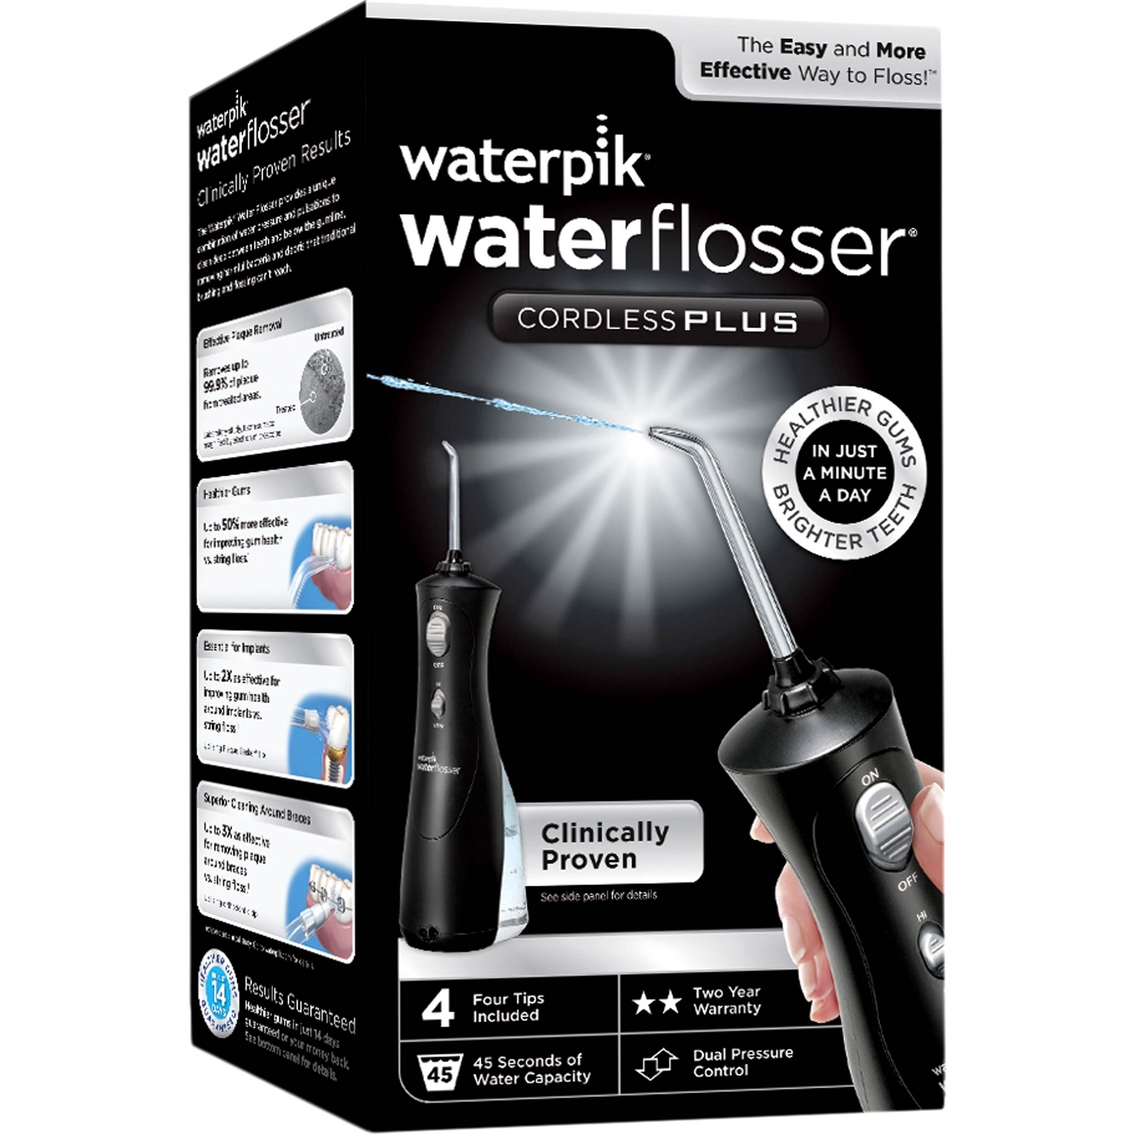 Waterpik Cordless Plus Water Flosser, Black - Image 2 of 2